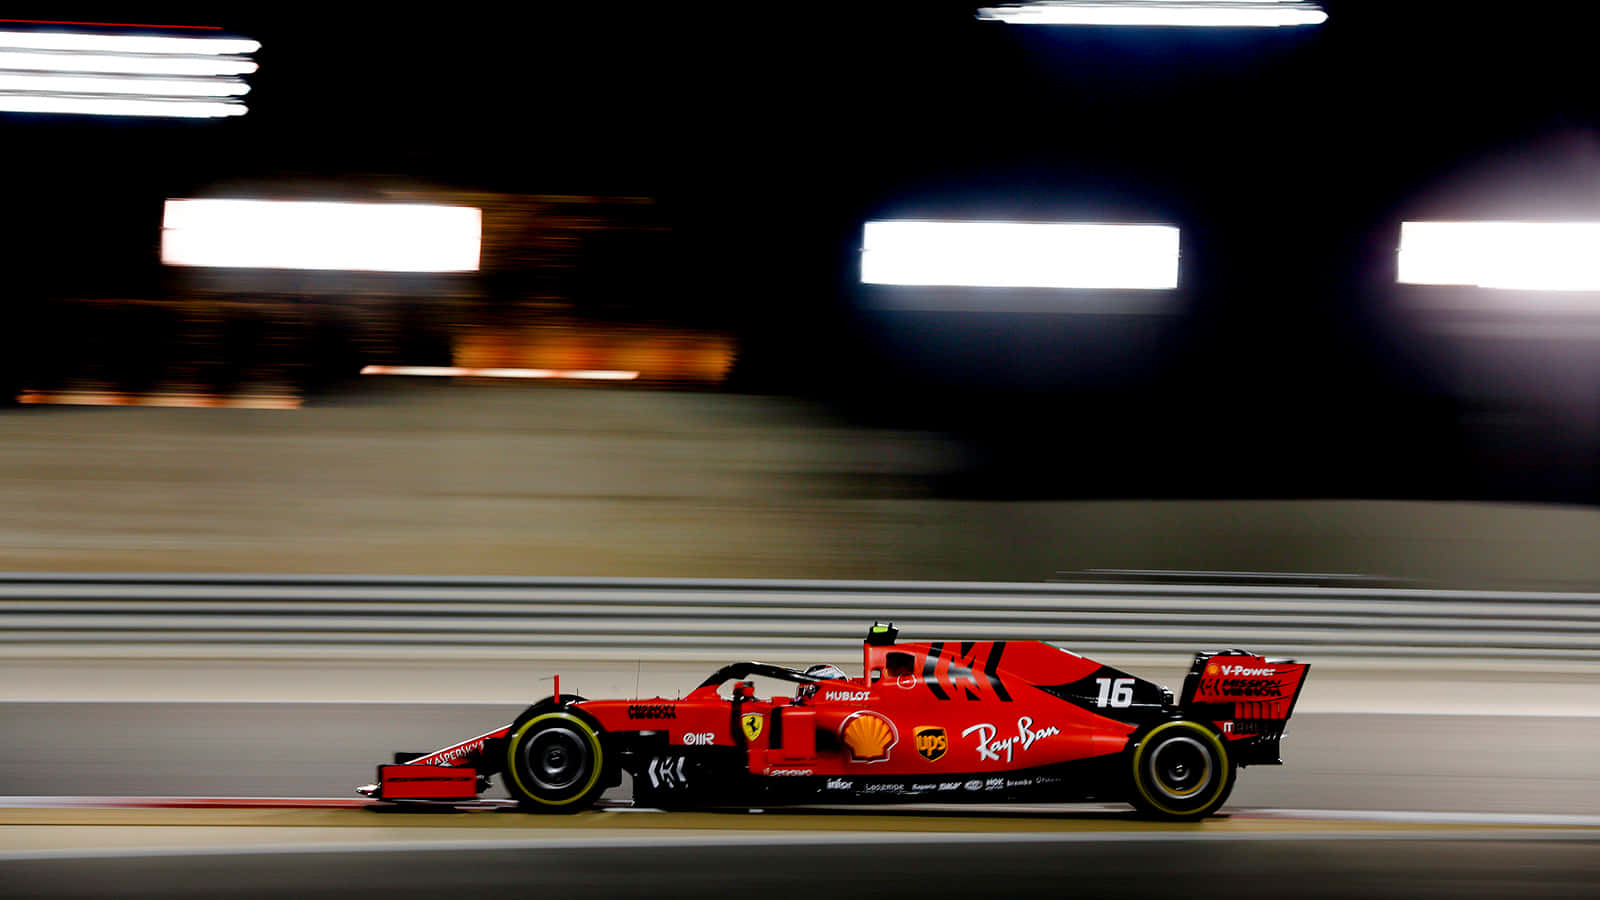 Ferrari F1 Car Driving On A Track At Night